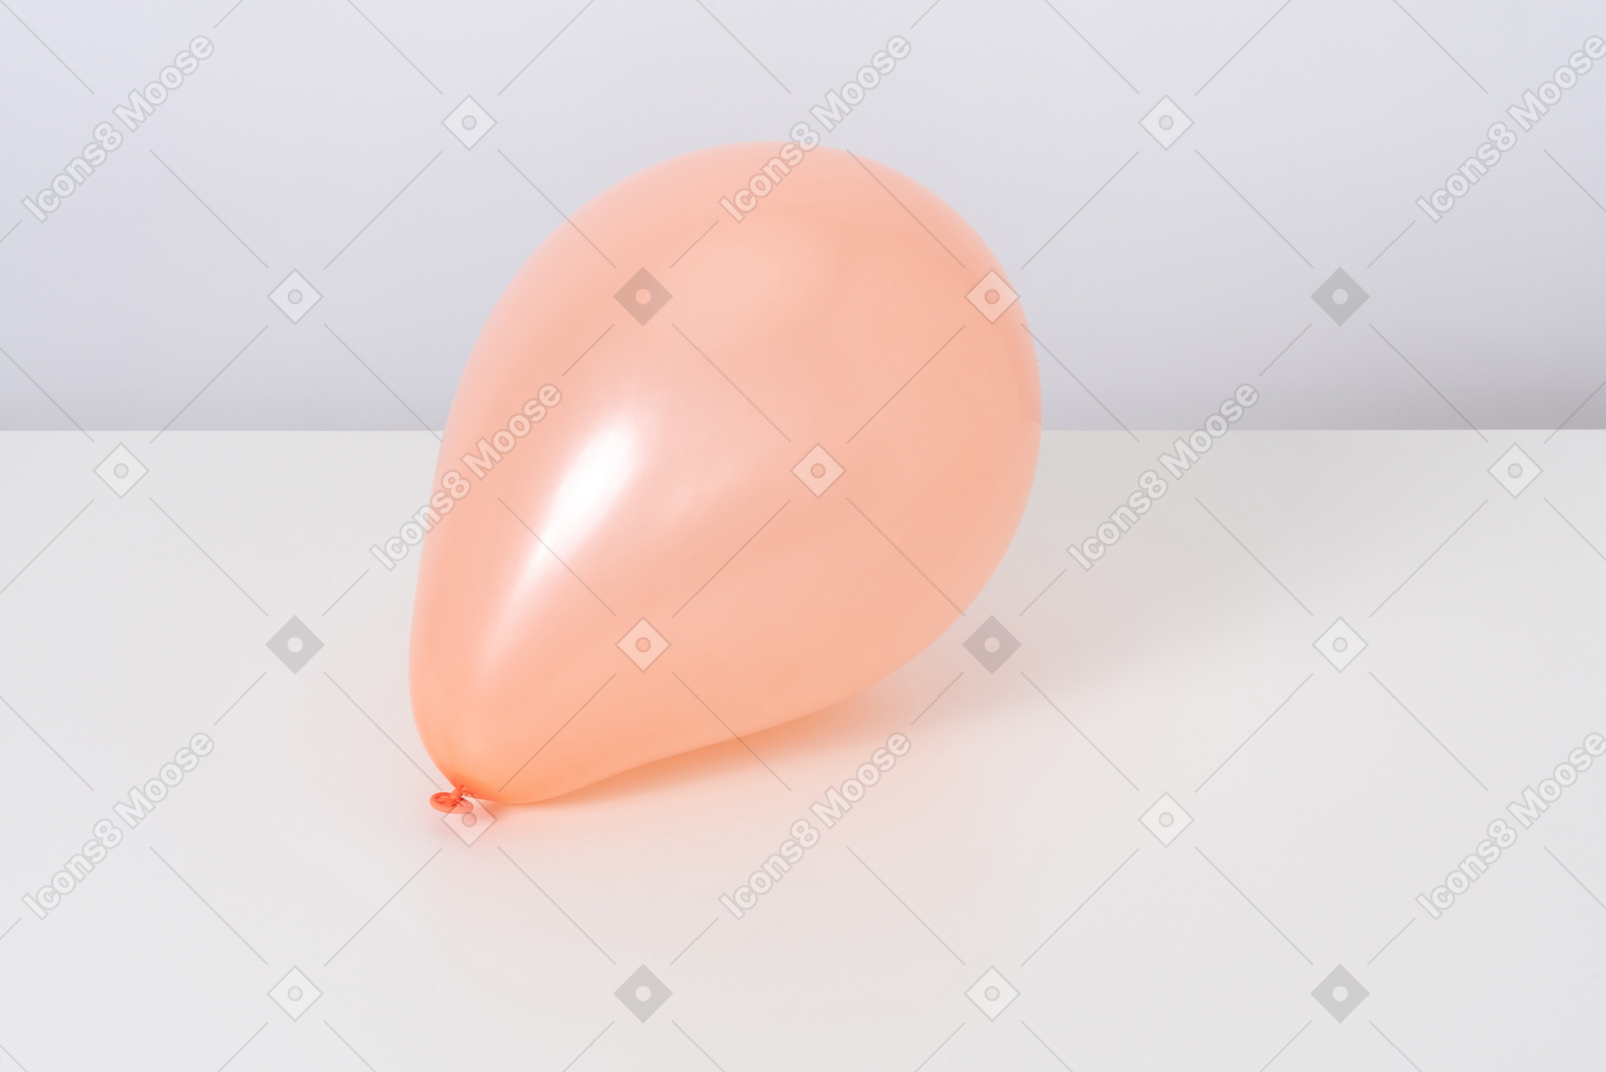 Orange balloon on a white background